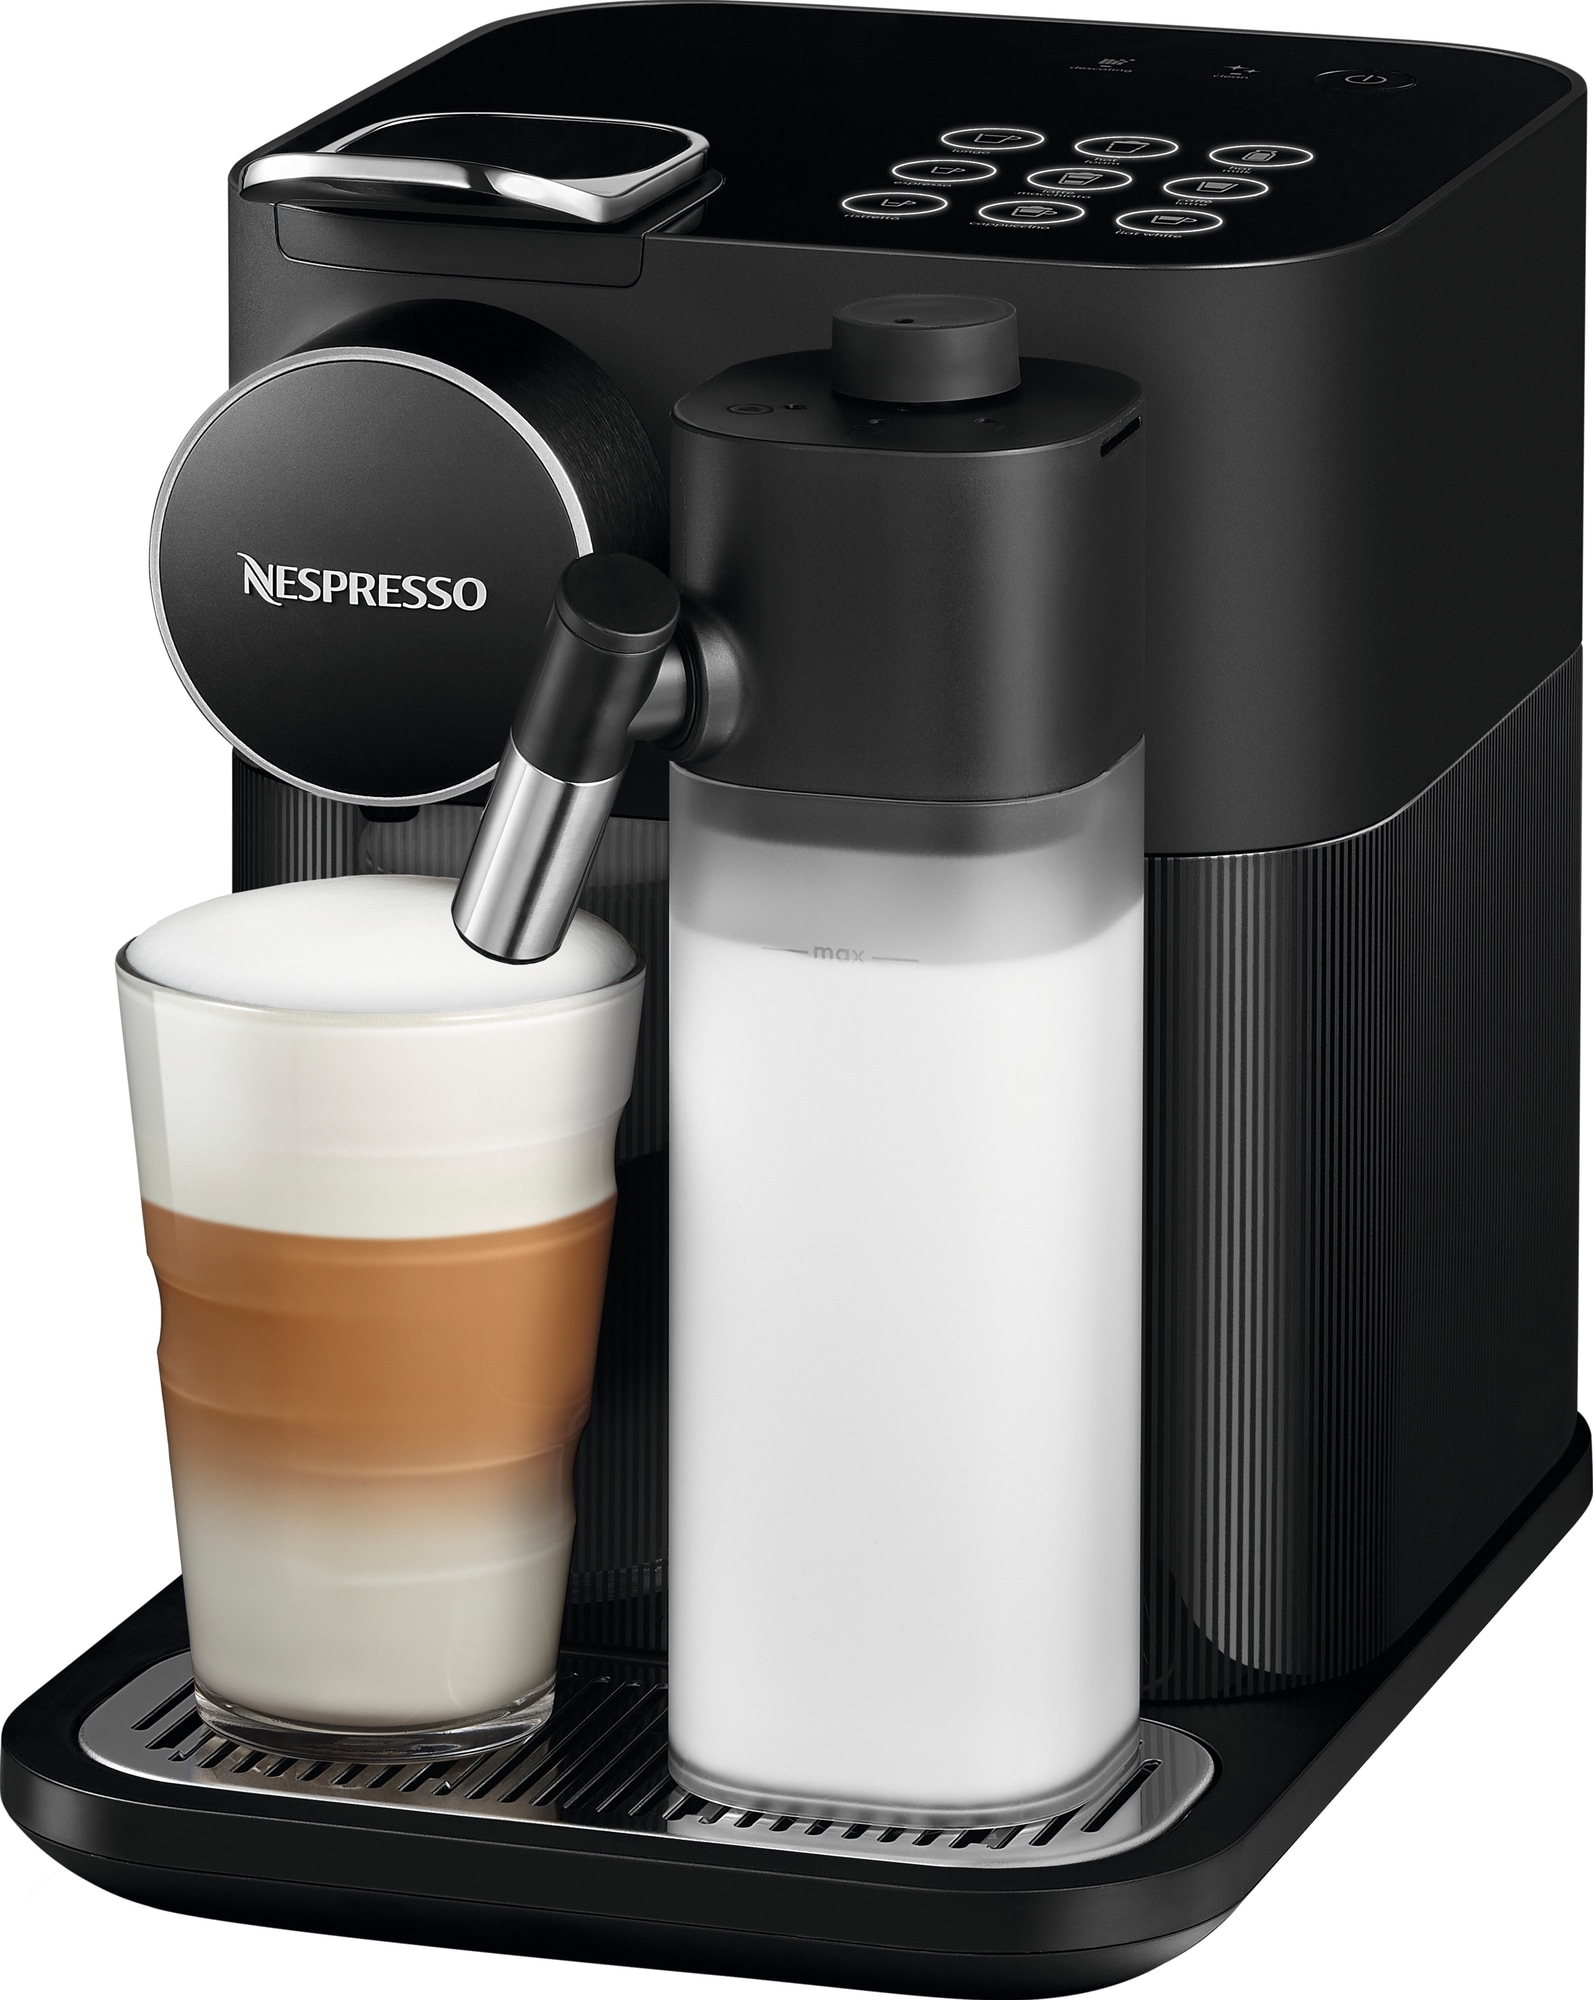 Bedste Nespresso Maskine - Vi Har Testet De 7 Bedste i 2022